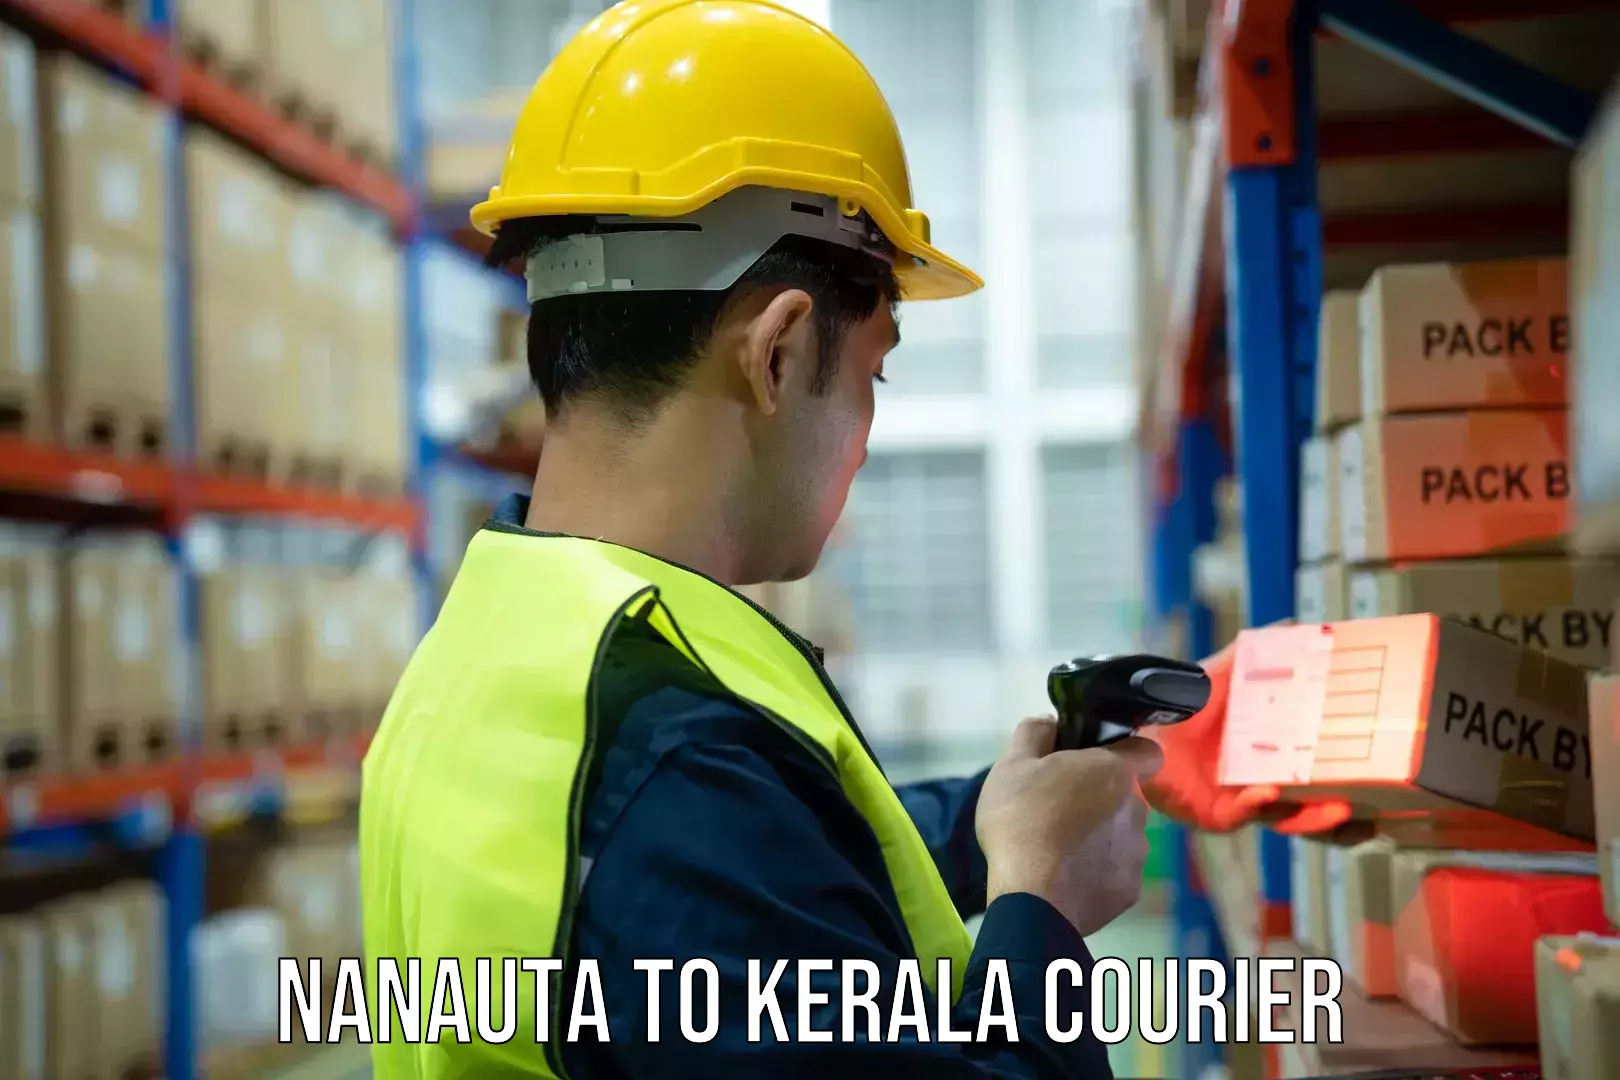 Global shipping solutions Nanauta to Kerala